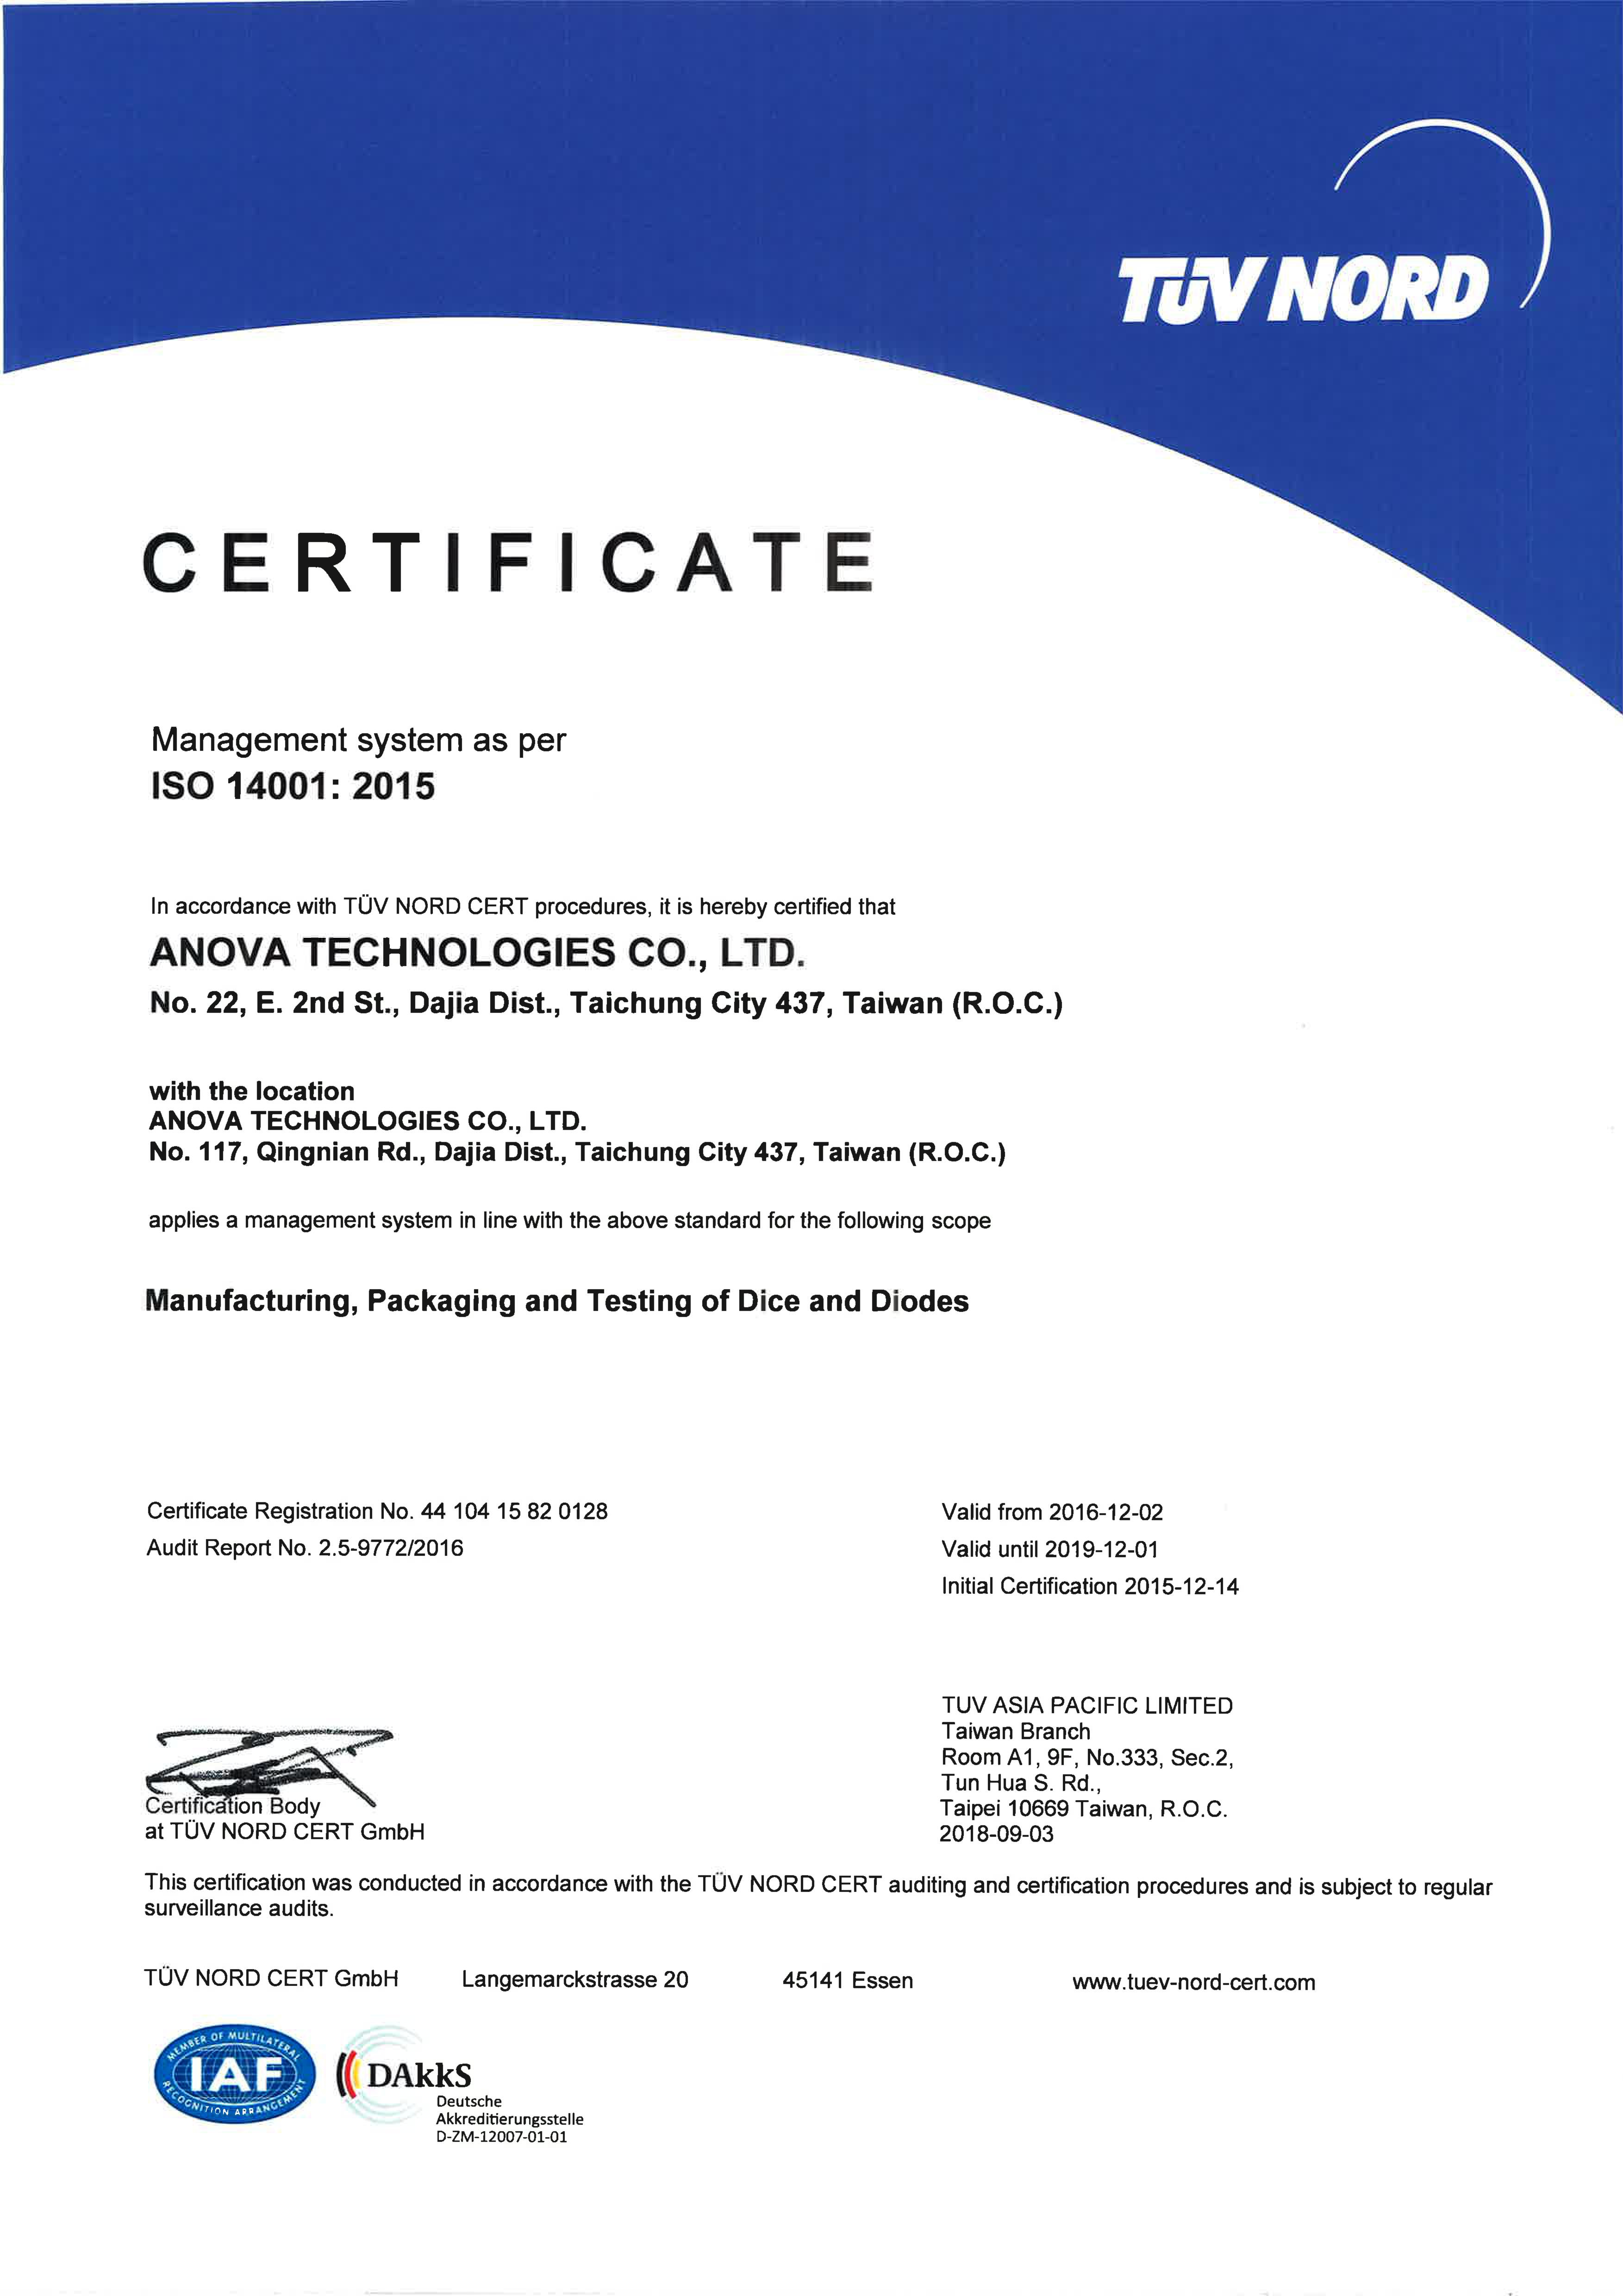 通過 ISO 14001: 2015 認證